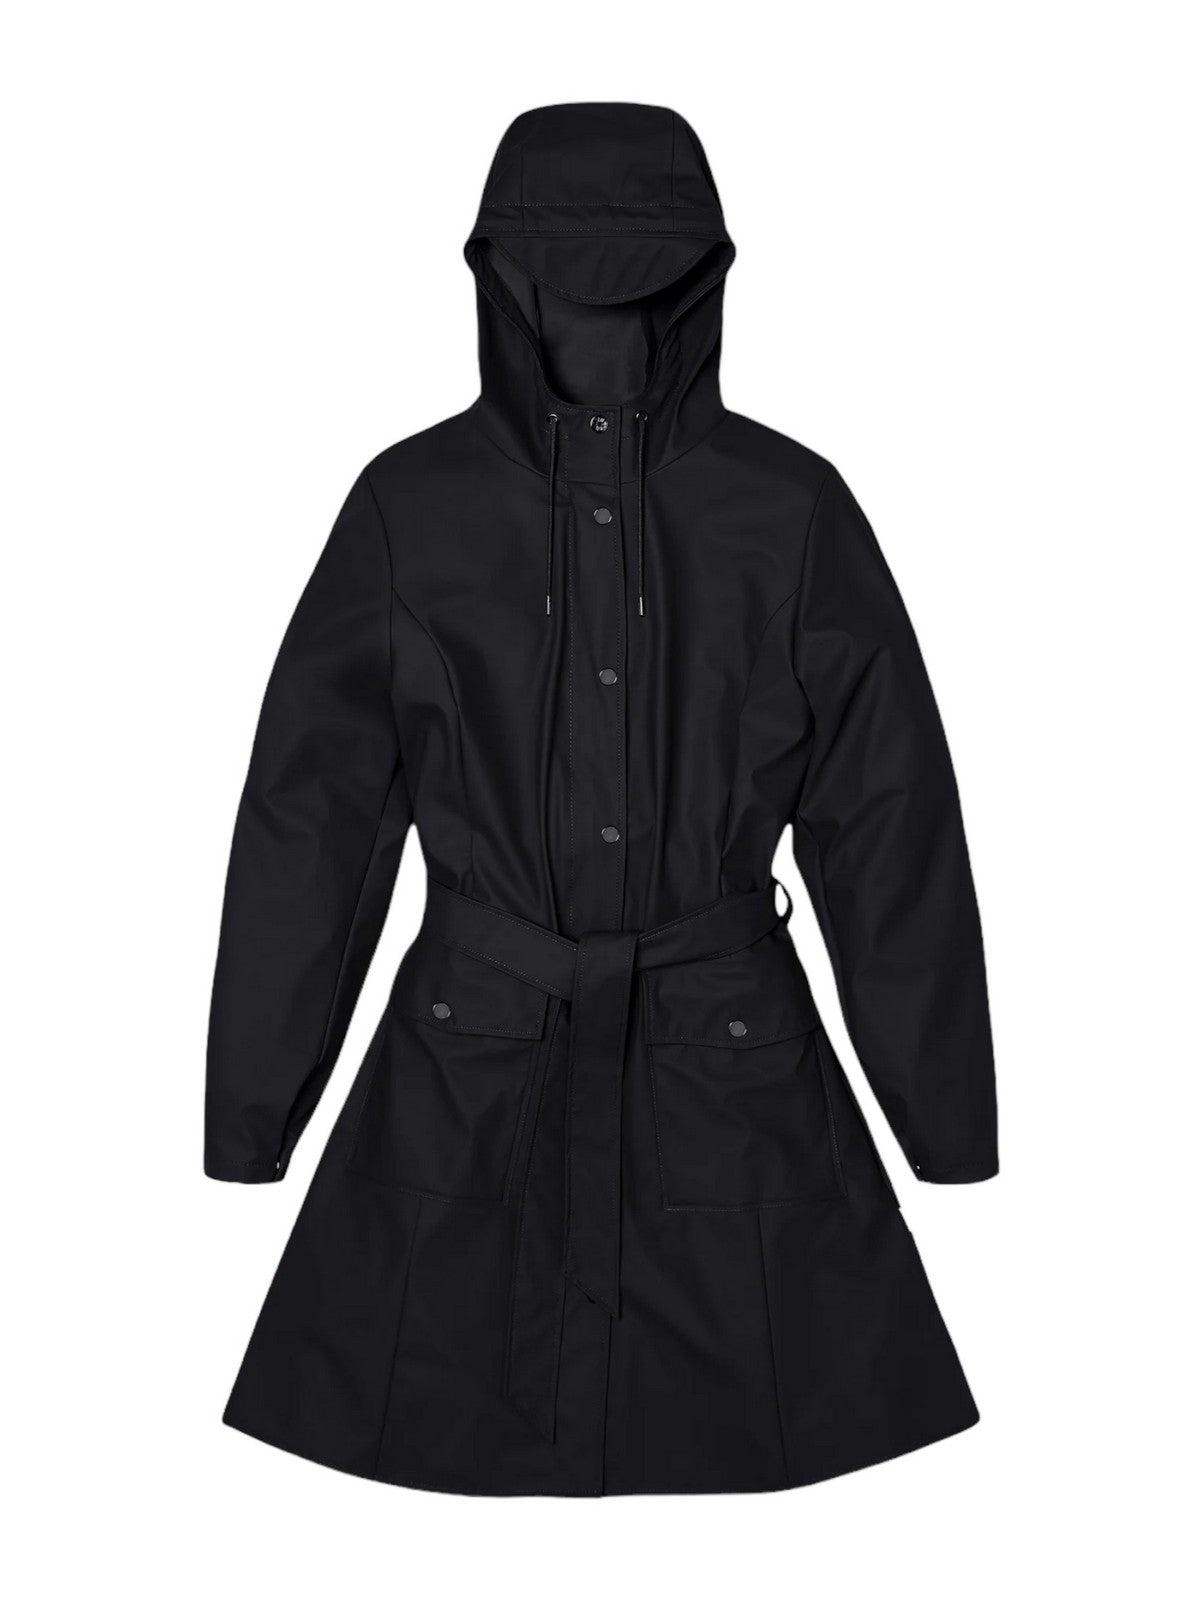 RAINS Giubbino Donna Curve W Jacket W3 18130 01 Black Nero